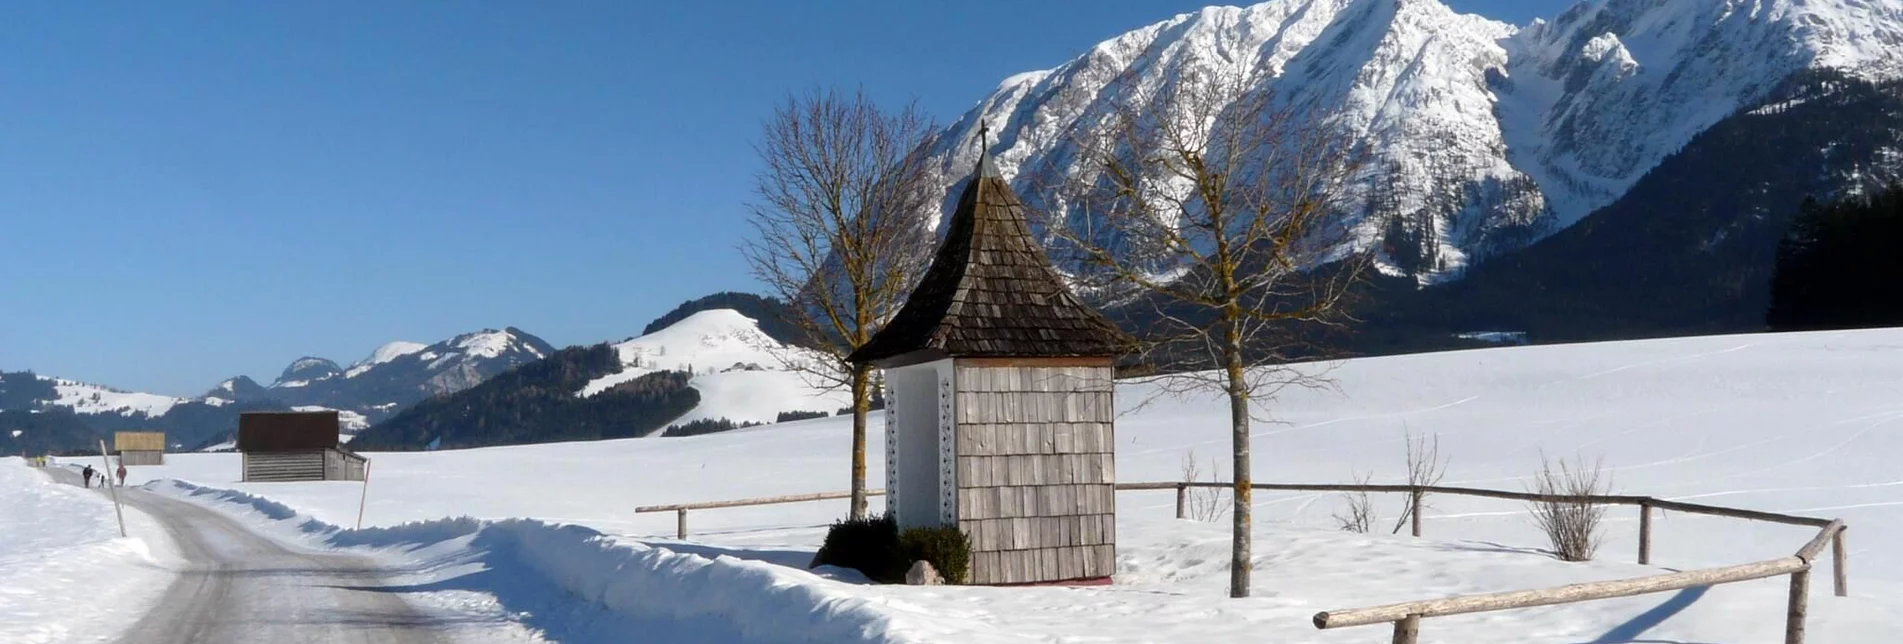 Winterwandern Winterwanderung Bad Mitterndorf - Touren-Impression #1 | © TVB Ausseerland - Salzkammergut/H. Rastl